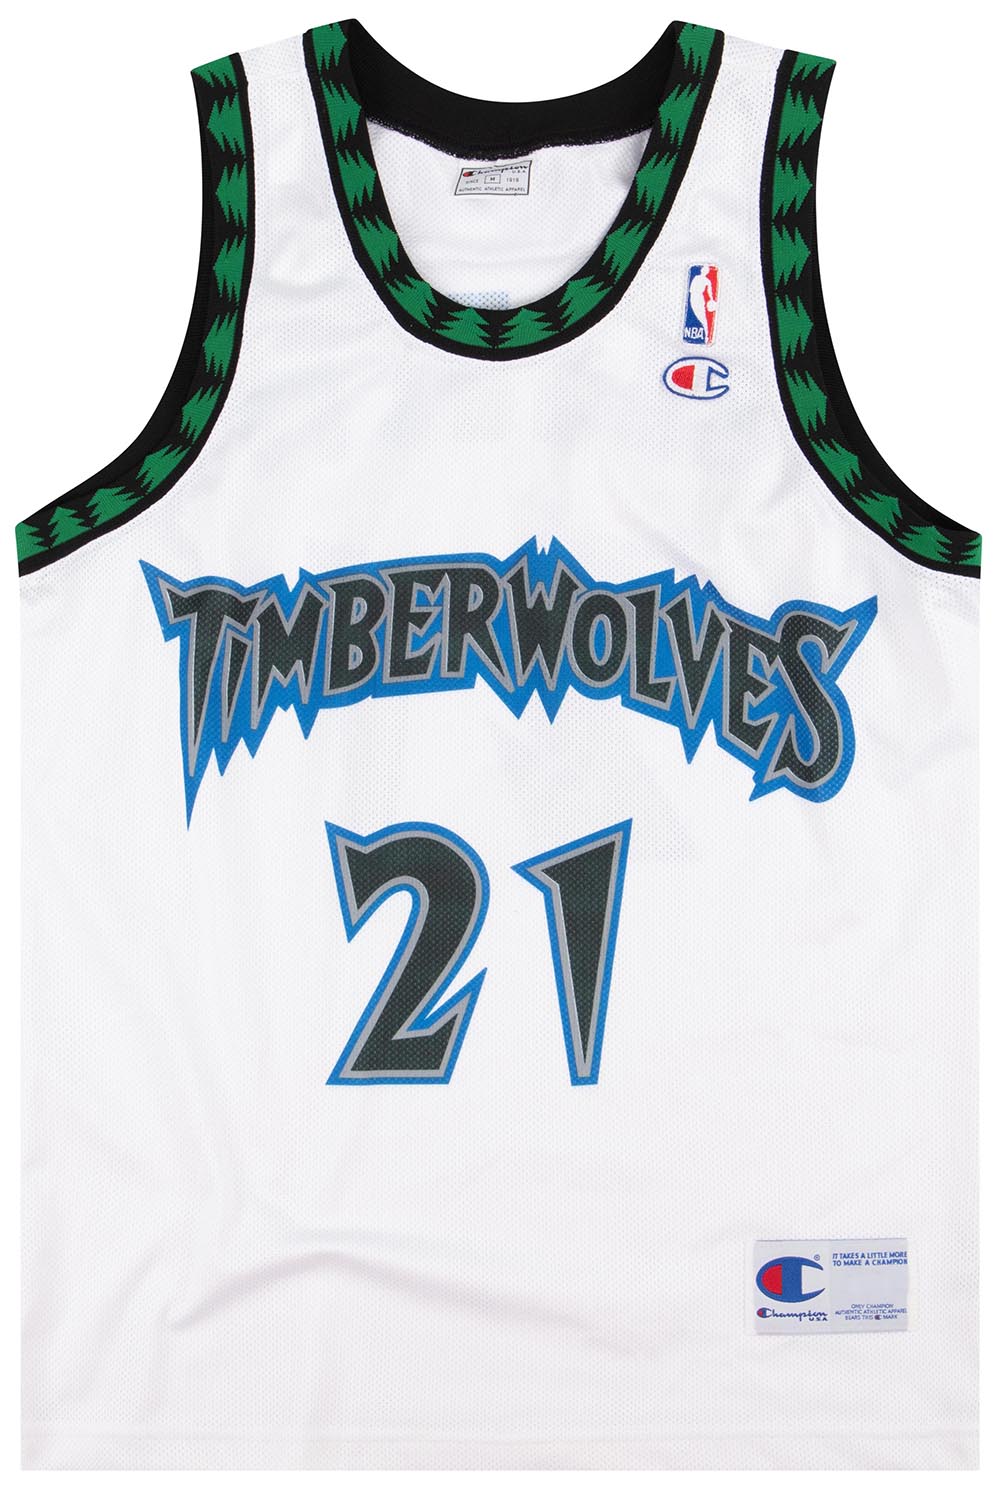 garnett timberwolves jersey retirement